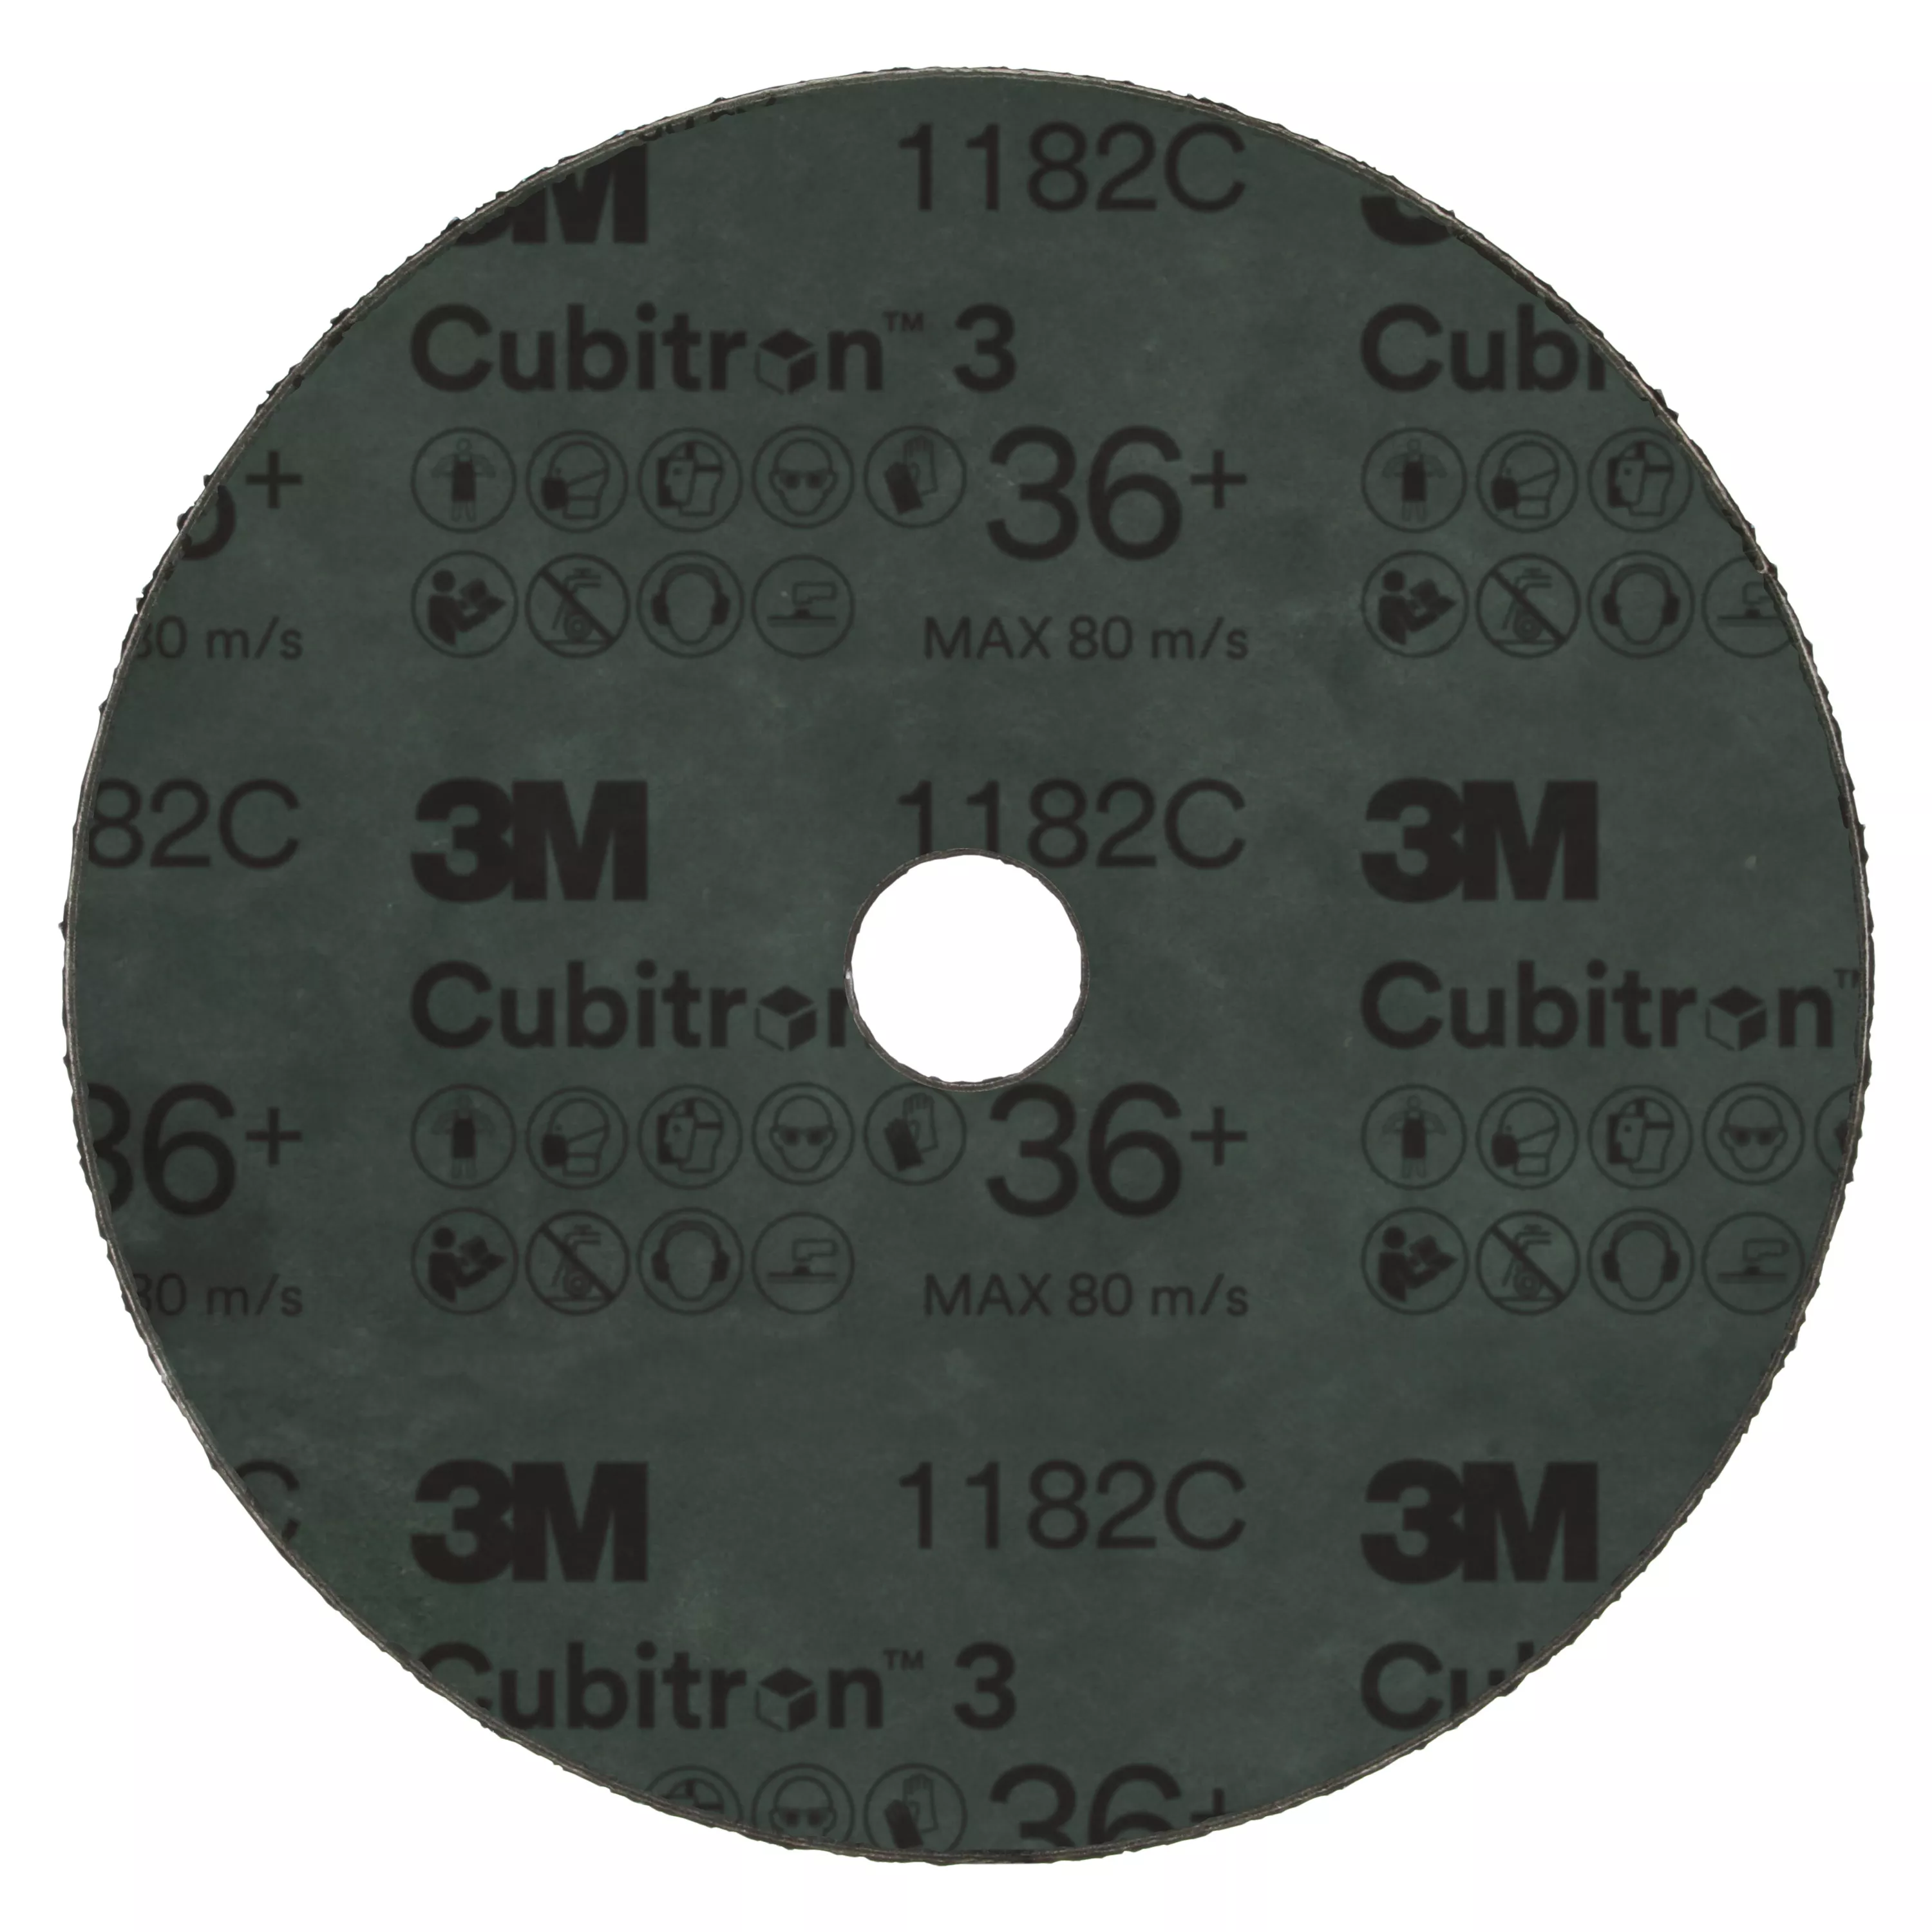 SKU 7100309904 | 3M™ Cubitron™ 3 Fibre Disc 1182C